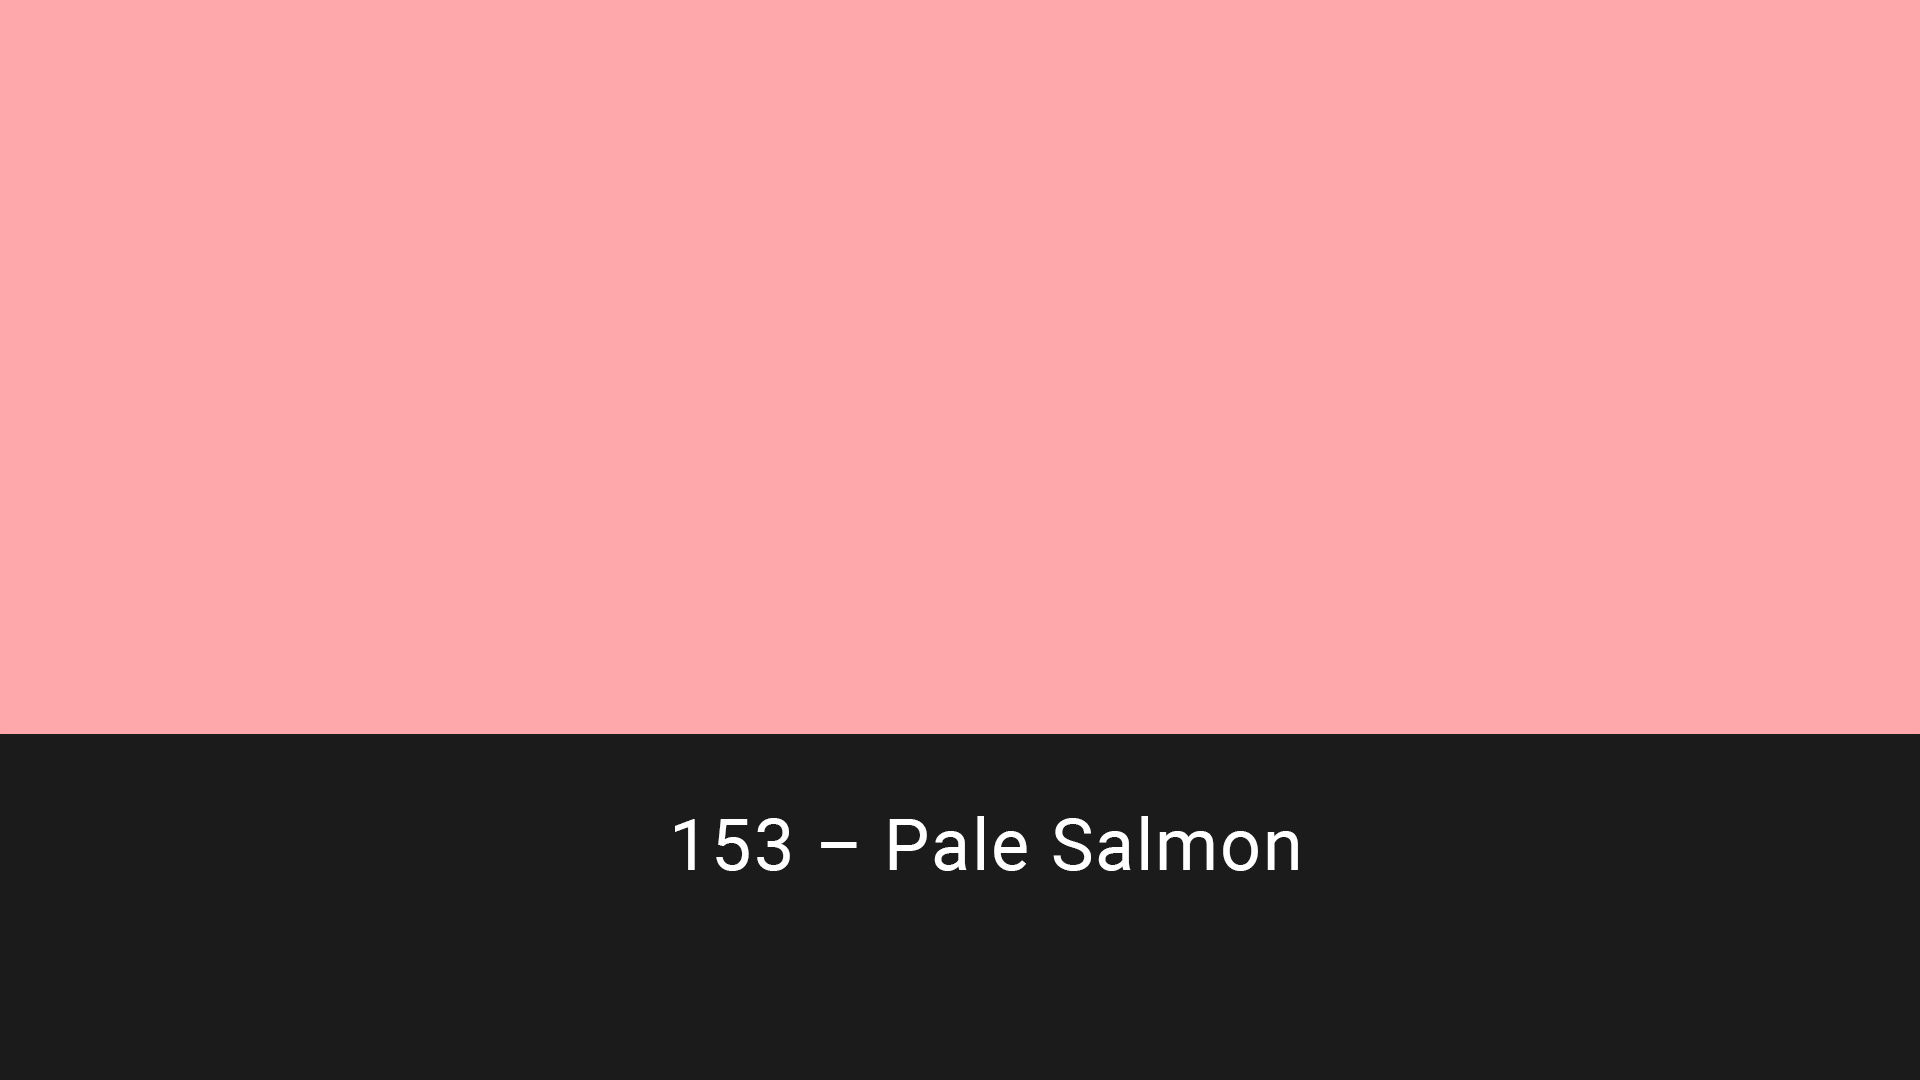 Cotech filters 153 Pale Salmon